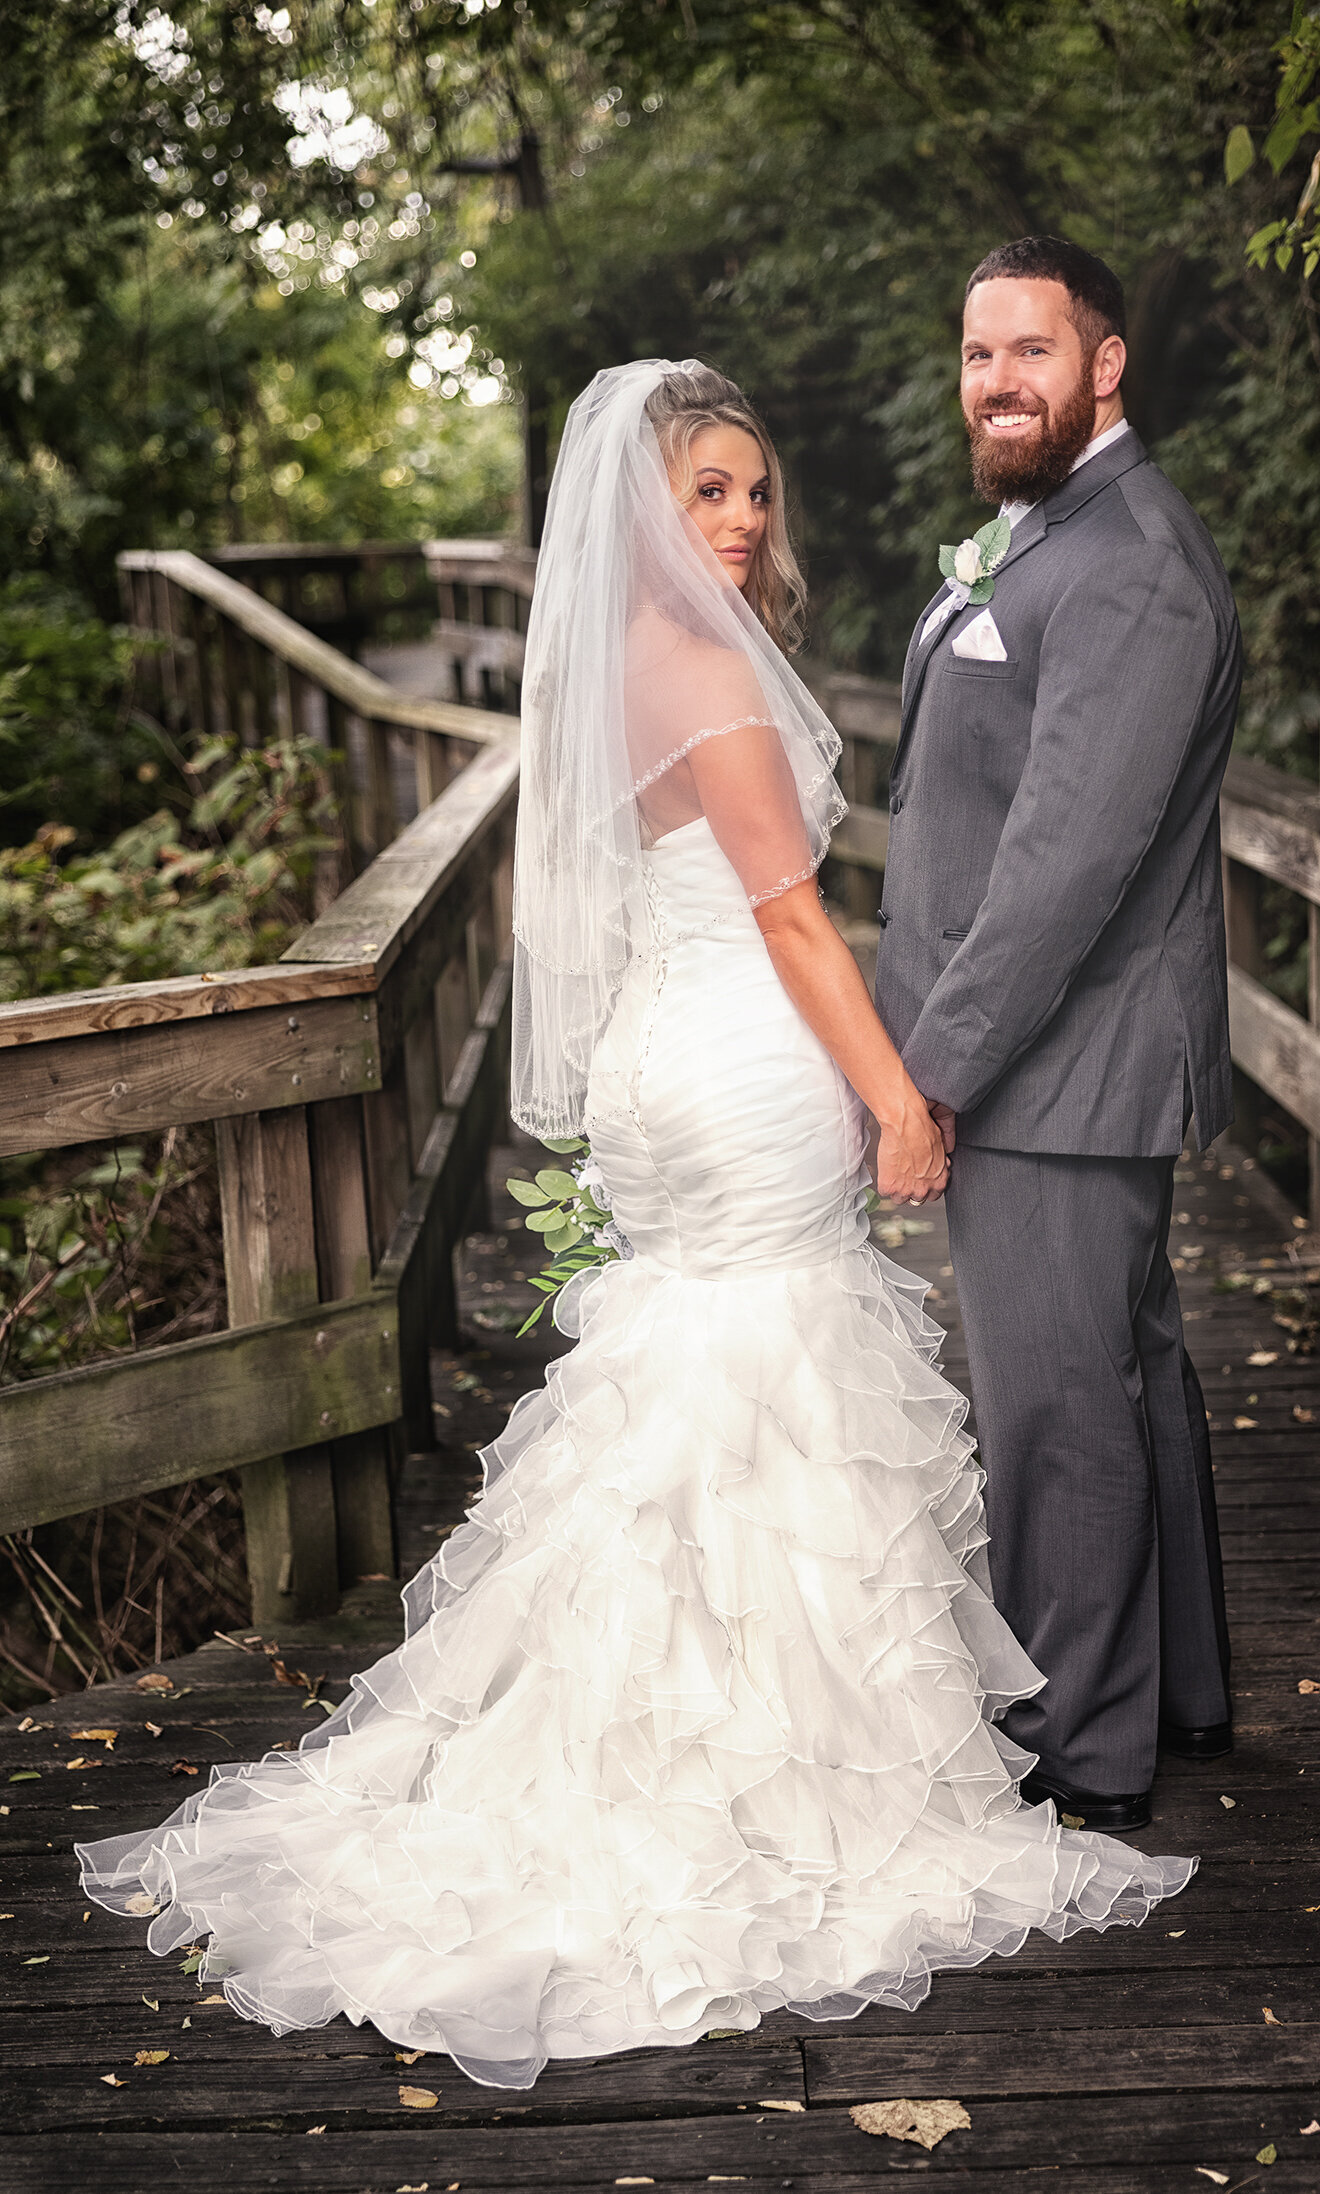 Cleveland Wedding Photography wedding photography (40 of 46)